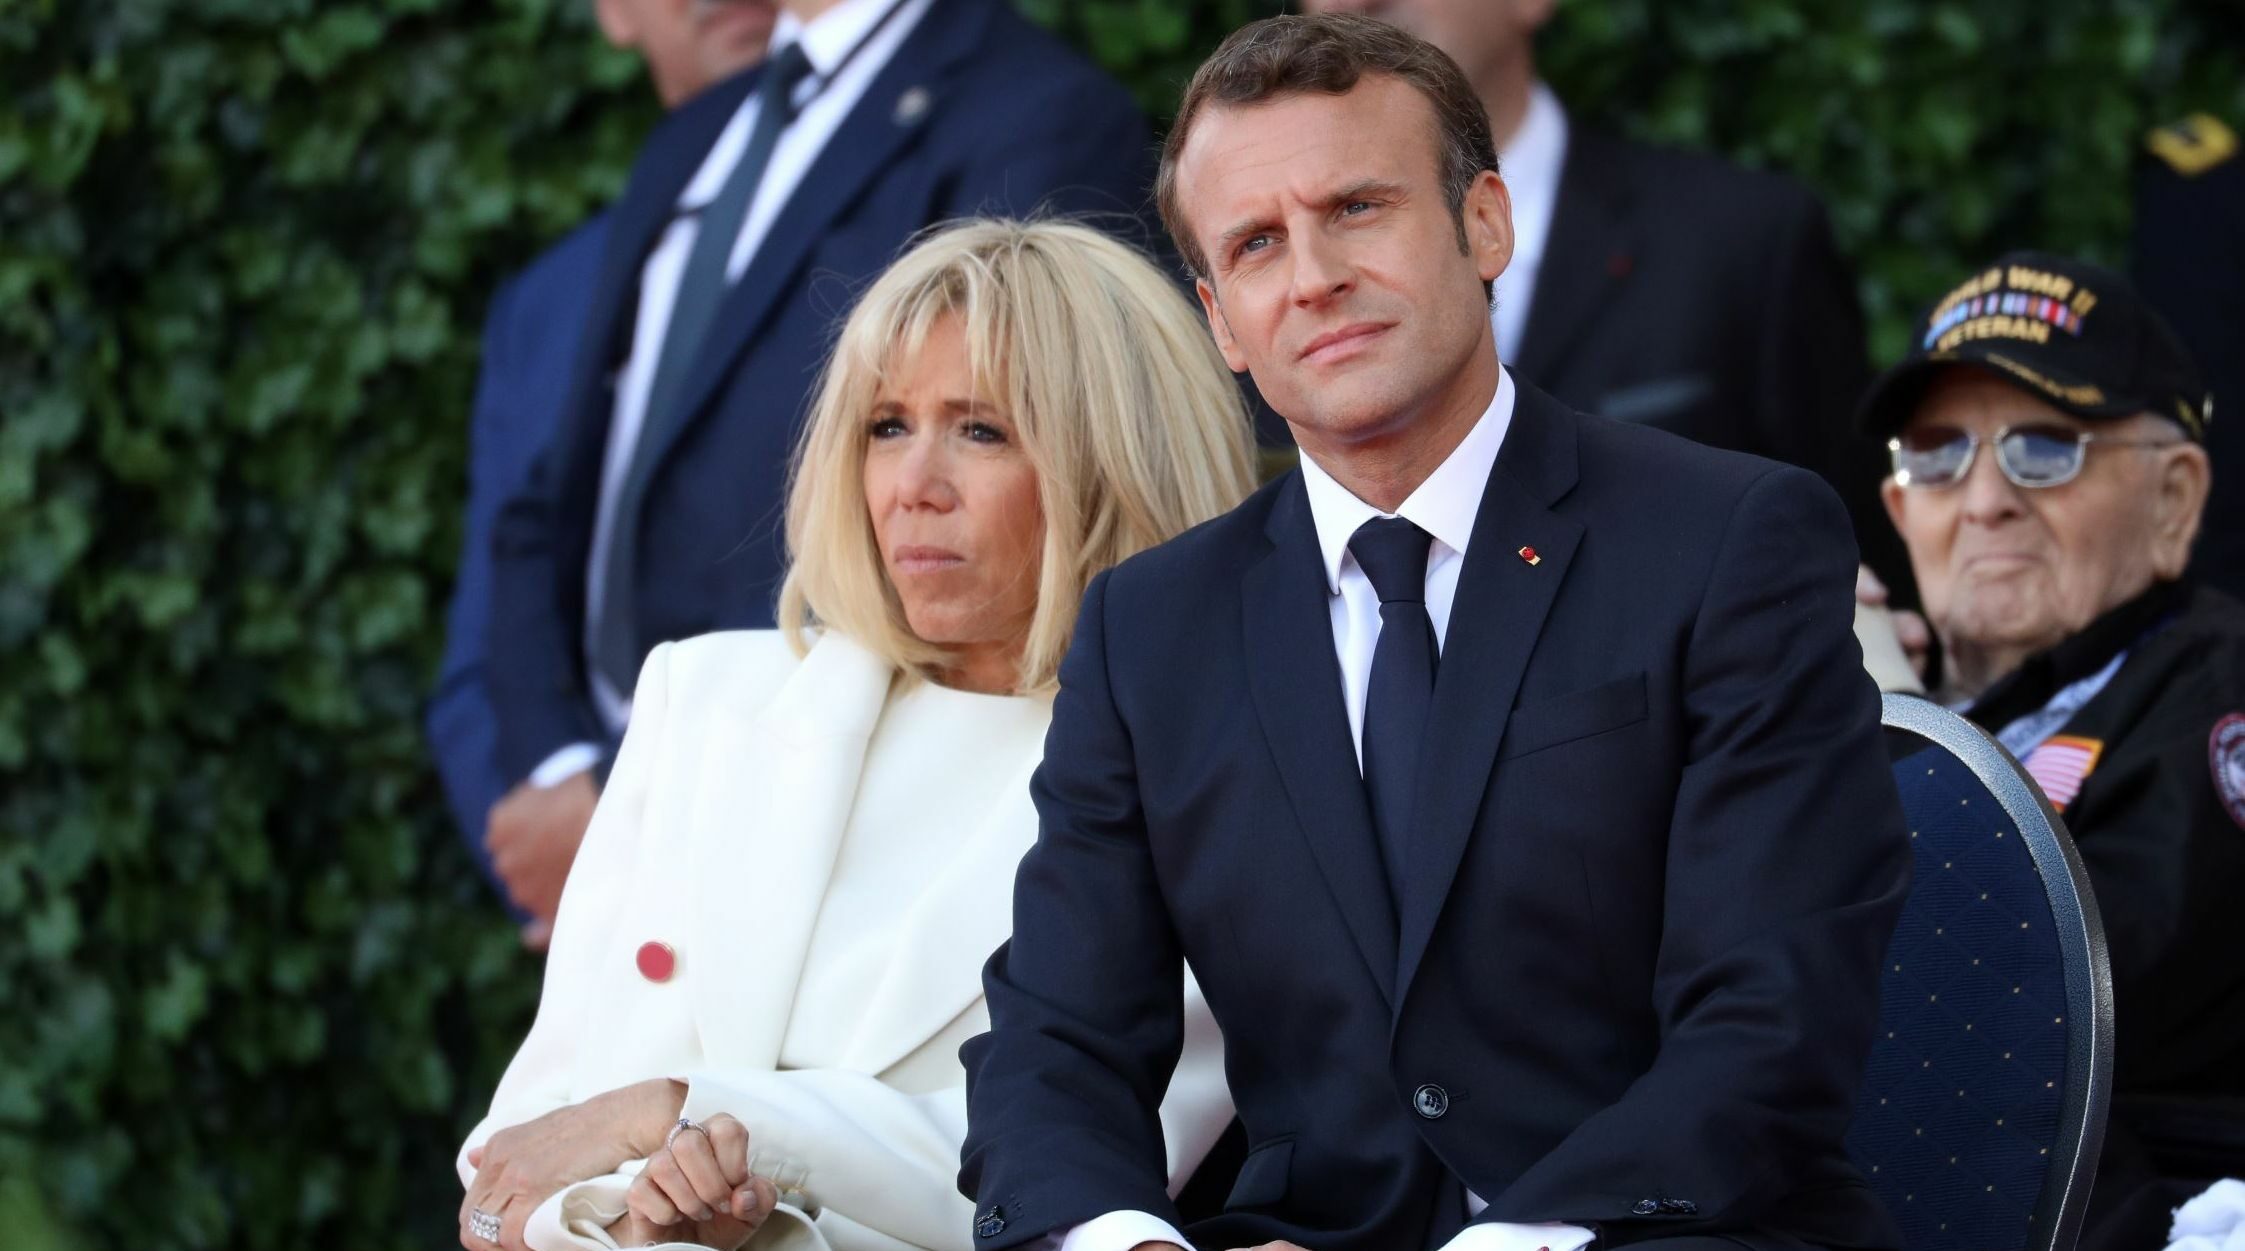 Emmanuel Macron très amoureux de Brigitte, un ancien camarade de classe raconte leur idylle